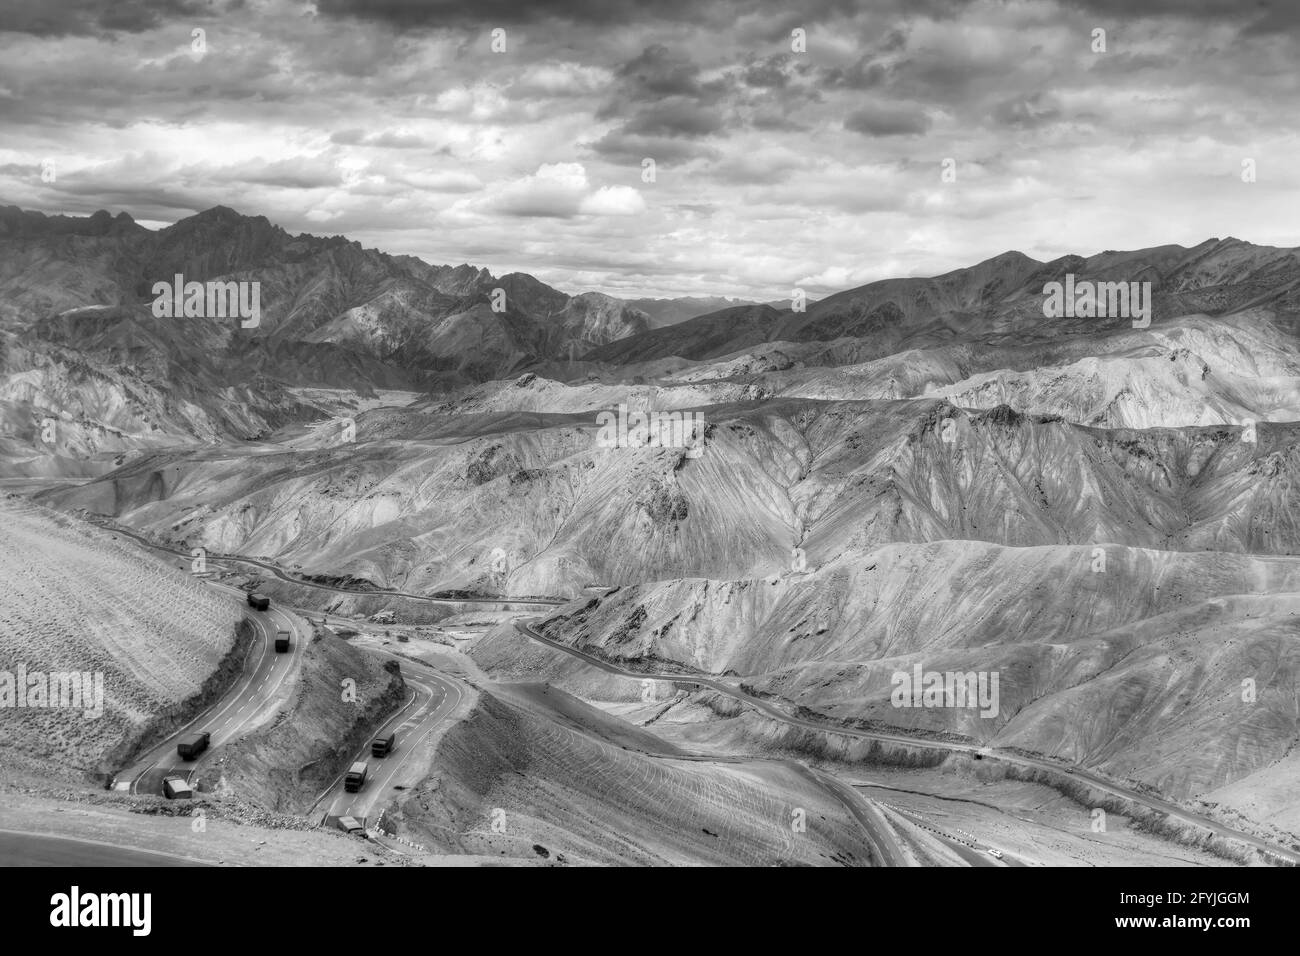 Luftaufnahme der Zigzag Straße - bekannt als jilabi Straße an der alten Route des Leh Srinagar Highway, Ladakh, Jammu und Kaschmir, Indien. Schwarz und Weiß. Stockfoto